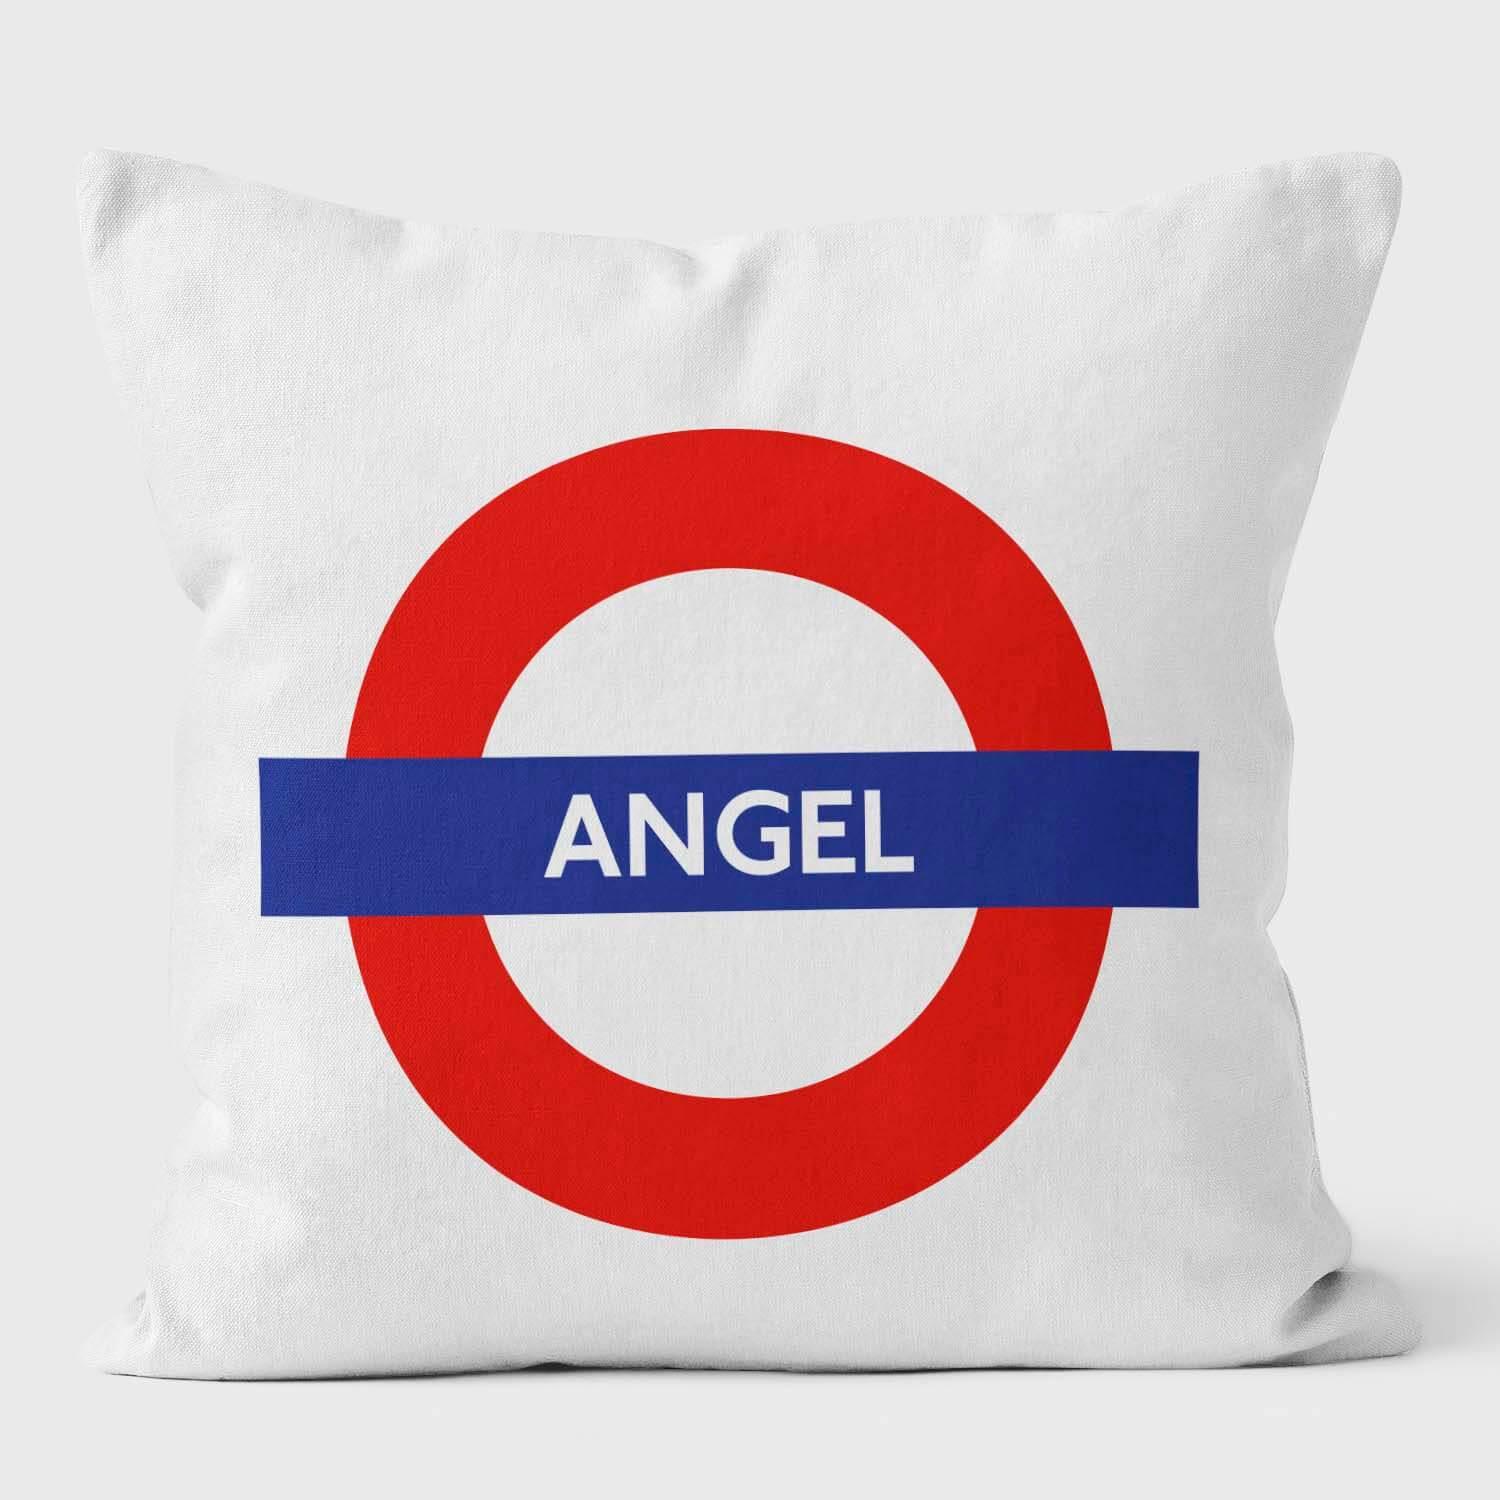 Angel London Underground Tube Station Roundel Cushion - Handmade Cushions UK - WeLoveCushions